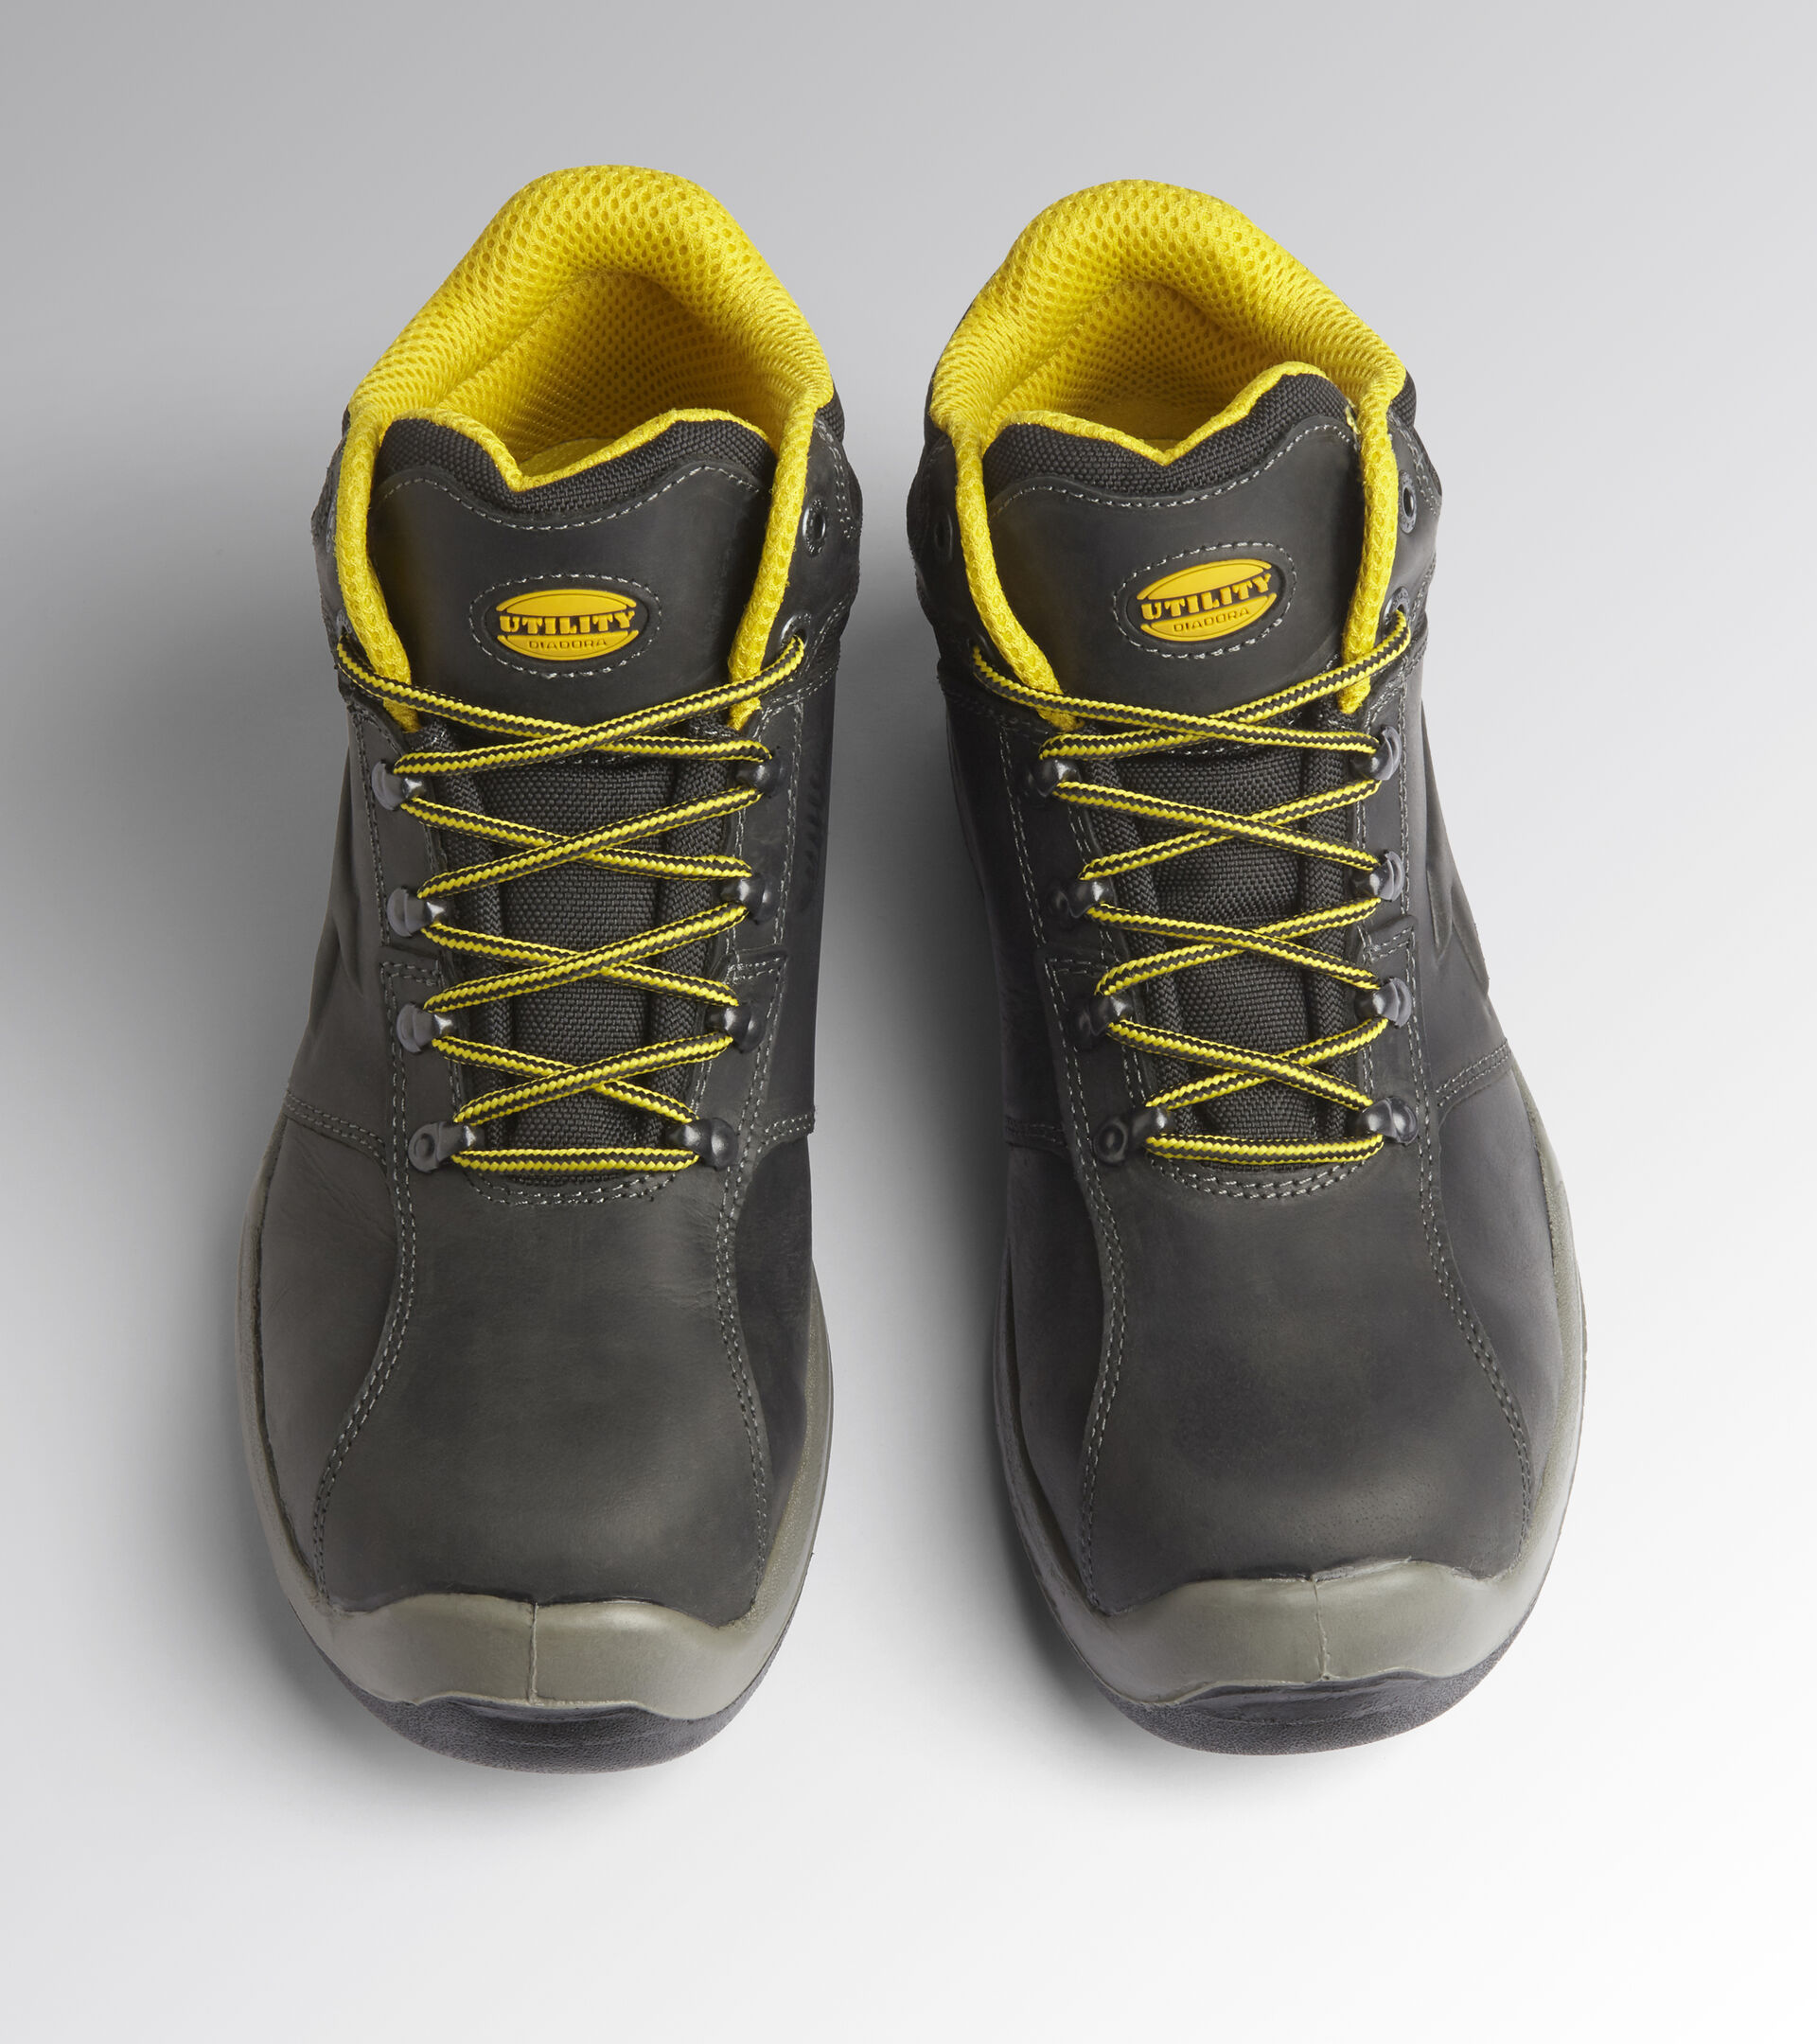 Footguard safe mid s3 src seguridad zapatos zapatos de trabajo 